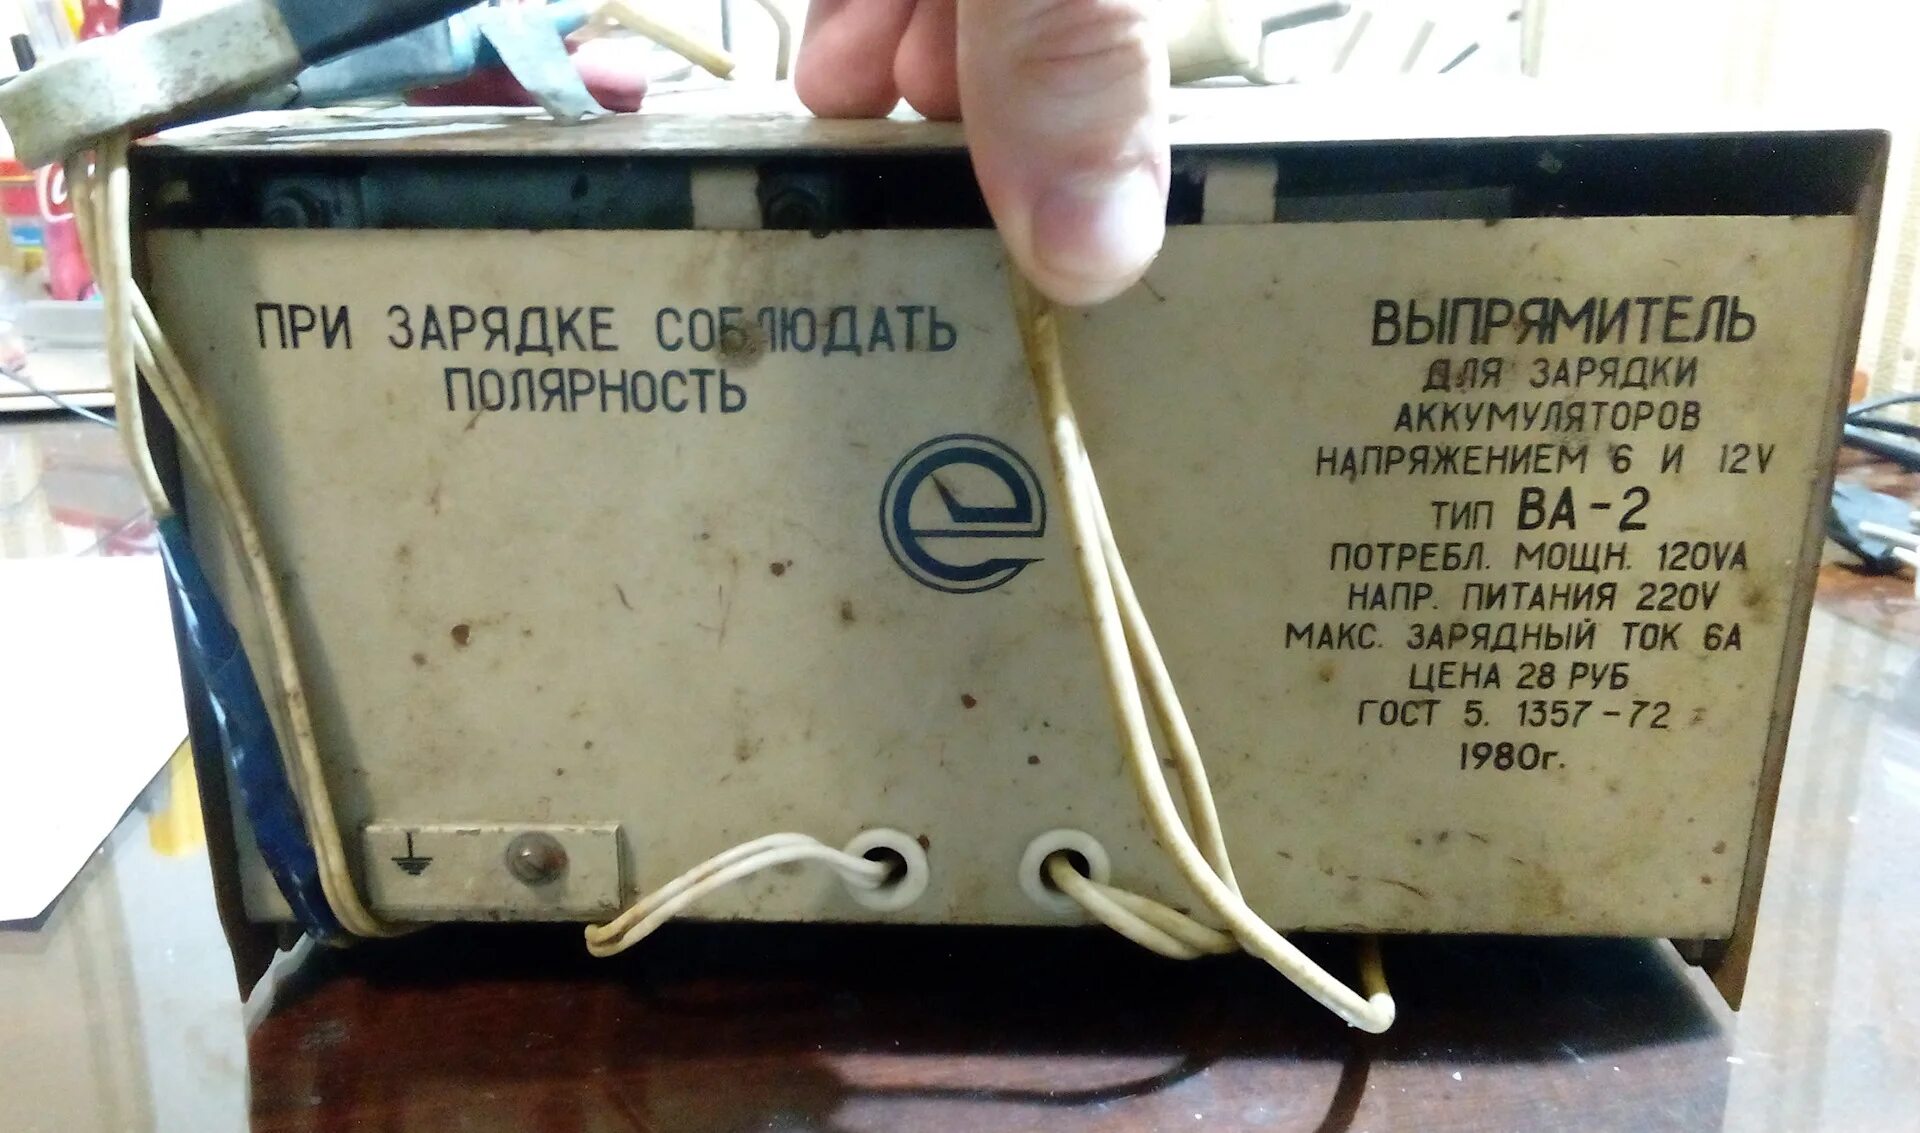 Выпрямитель СССР для зарядки АКБ 12в. Выпрямитель для зарядки аккумулятора Тип ва-2. Выпрямитель для зарядки АКБ ва 2. Зарядное для автомобильного аккумулятора ВАЗ 6/12-6. Дай зарядное